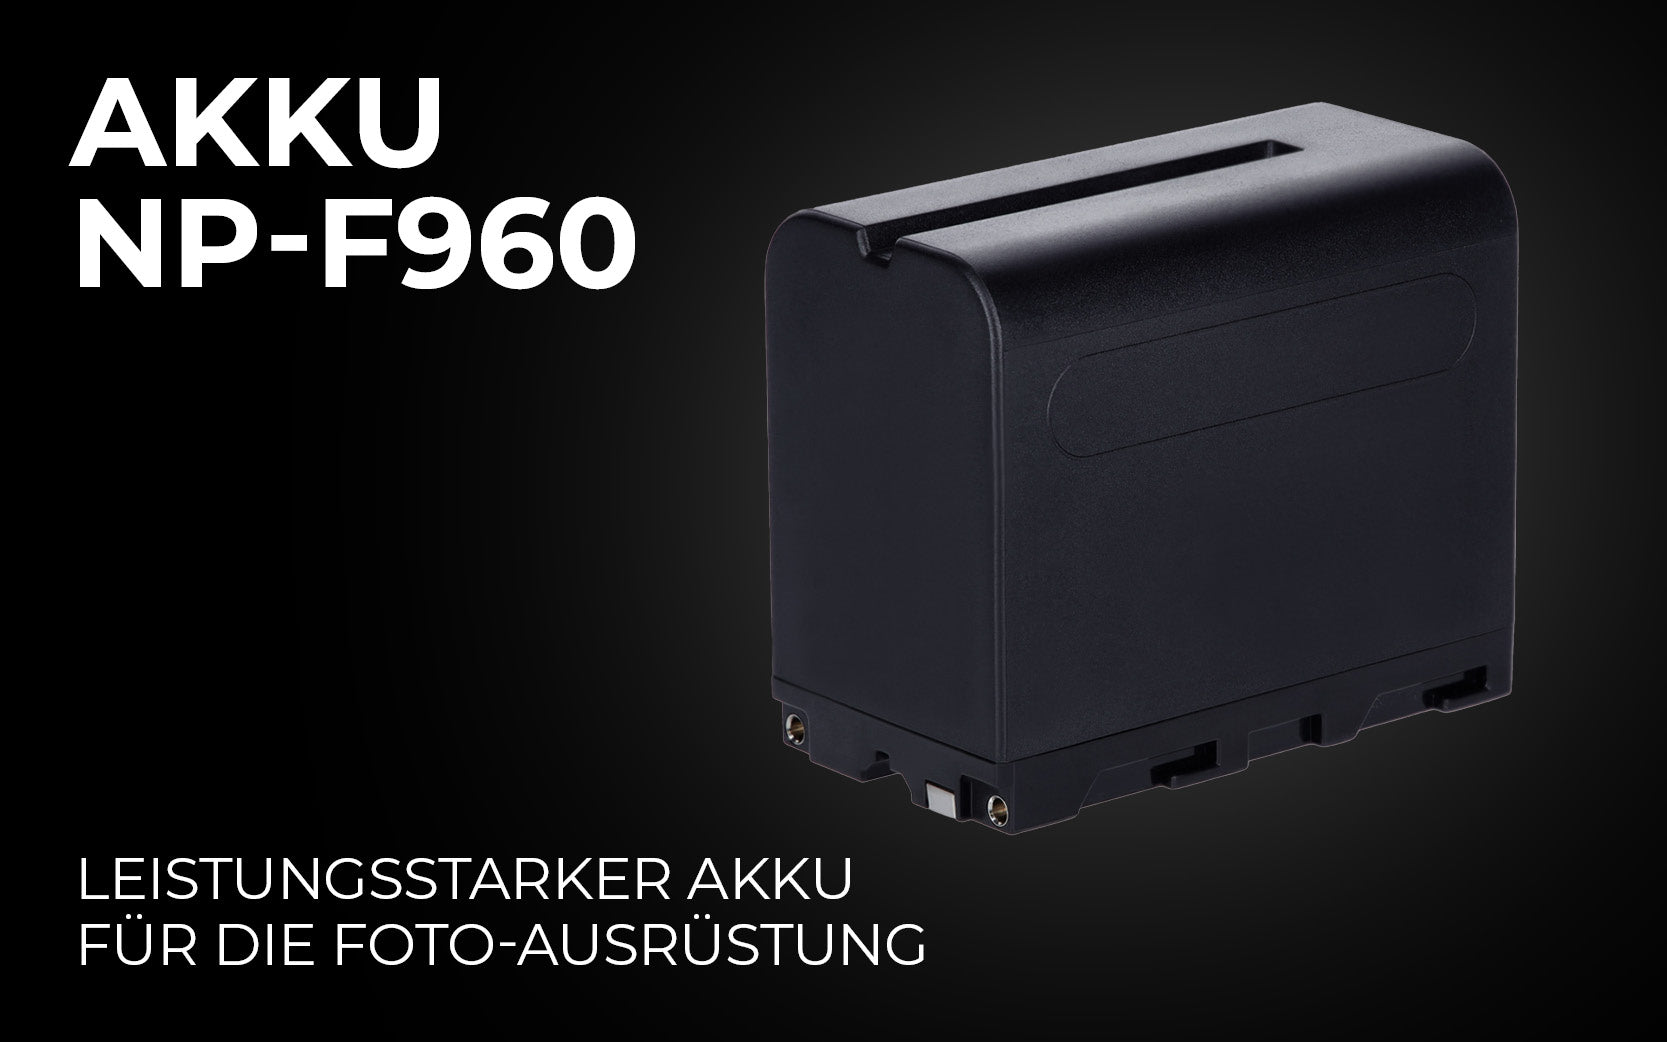 Akku Typ NP-F960 - Leistungsstarker Akku für die Foto-Ausrüstung